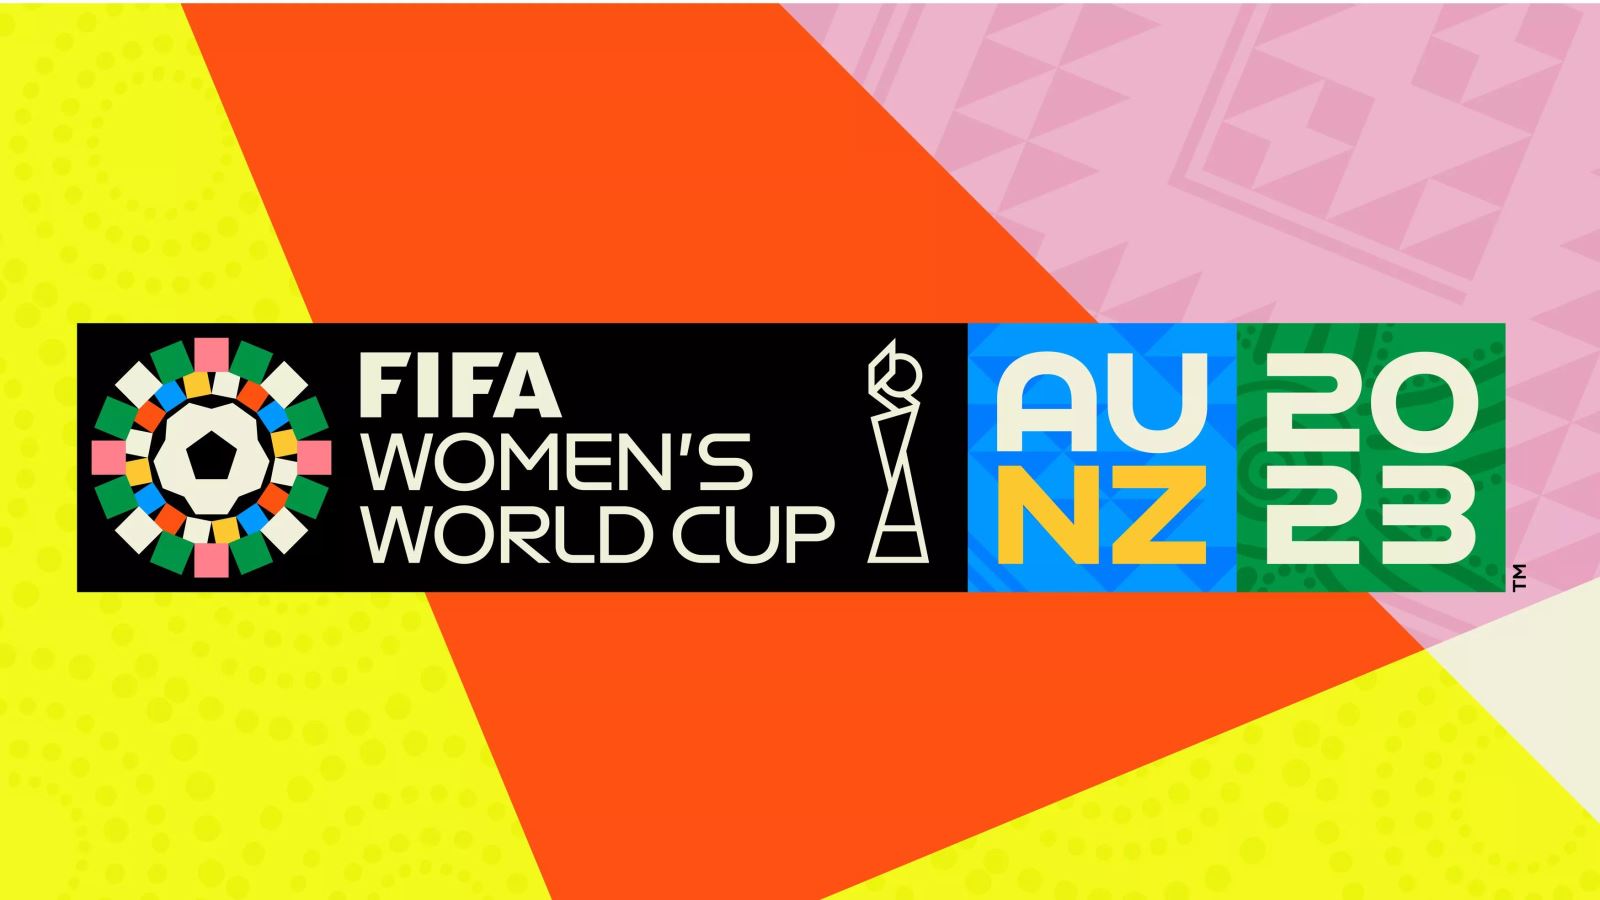 VCK World Cup nữ 2023 có 32 đội tham gia, dự kiến khởi tranh tại Australia và New Zealand từ ngày 20/7/2023 đến ngày 20/8/2023